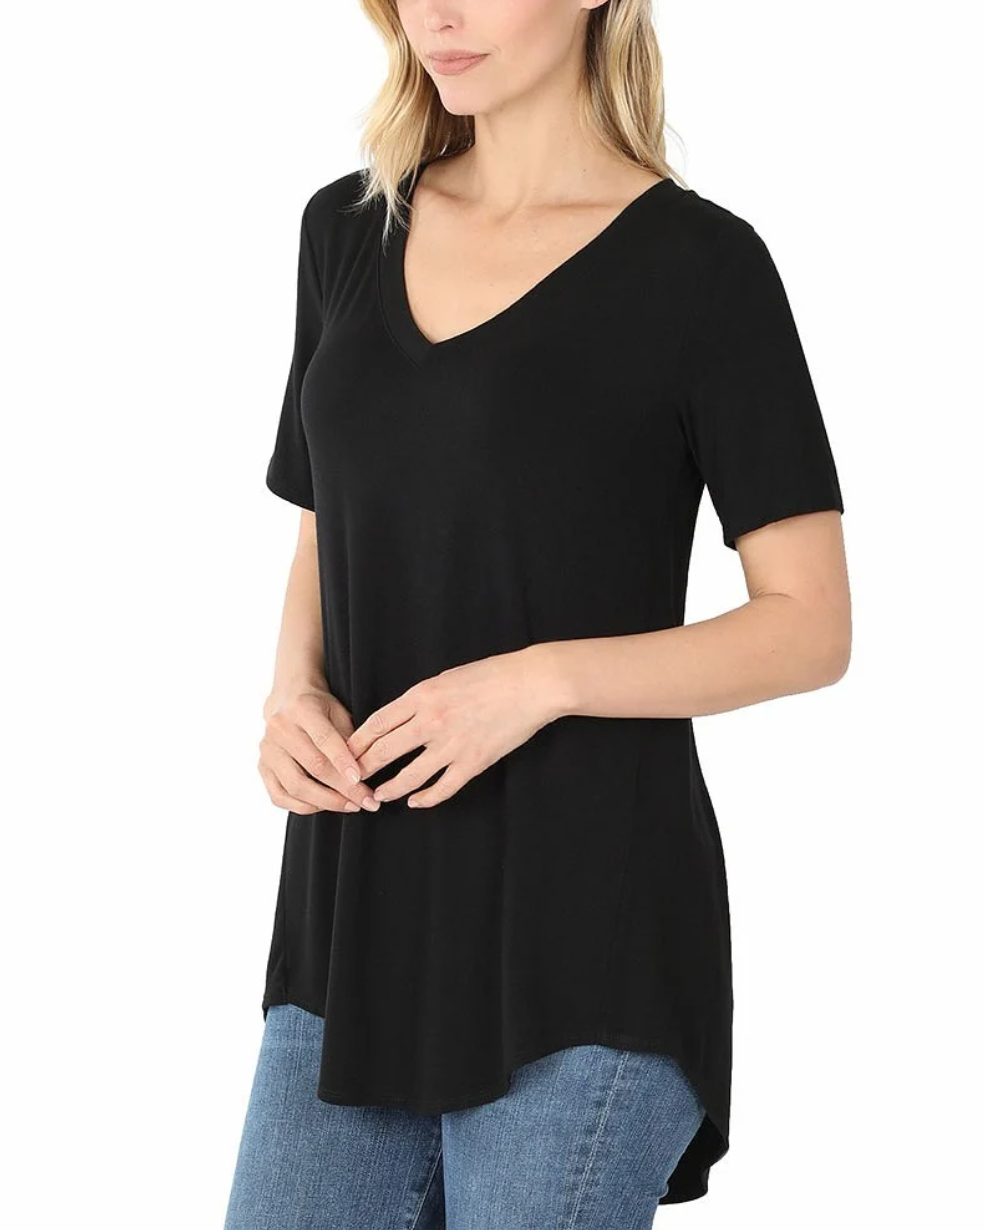 Zenana- Short Sleeve V-Neck Top in BLACK